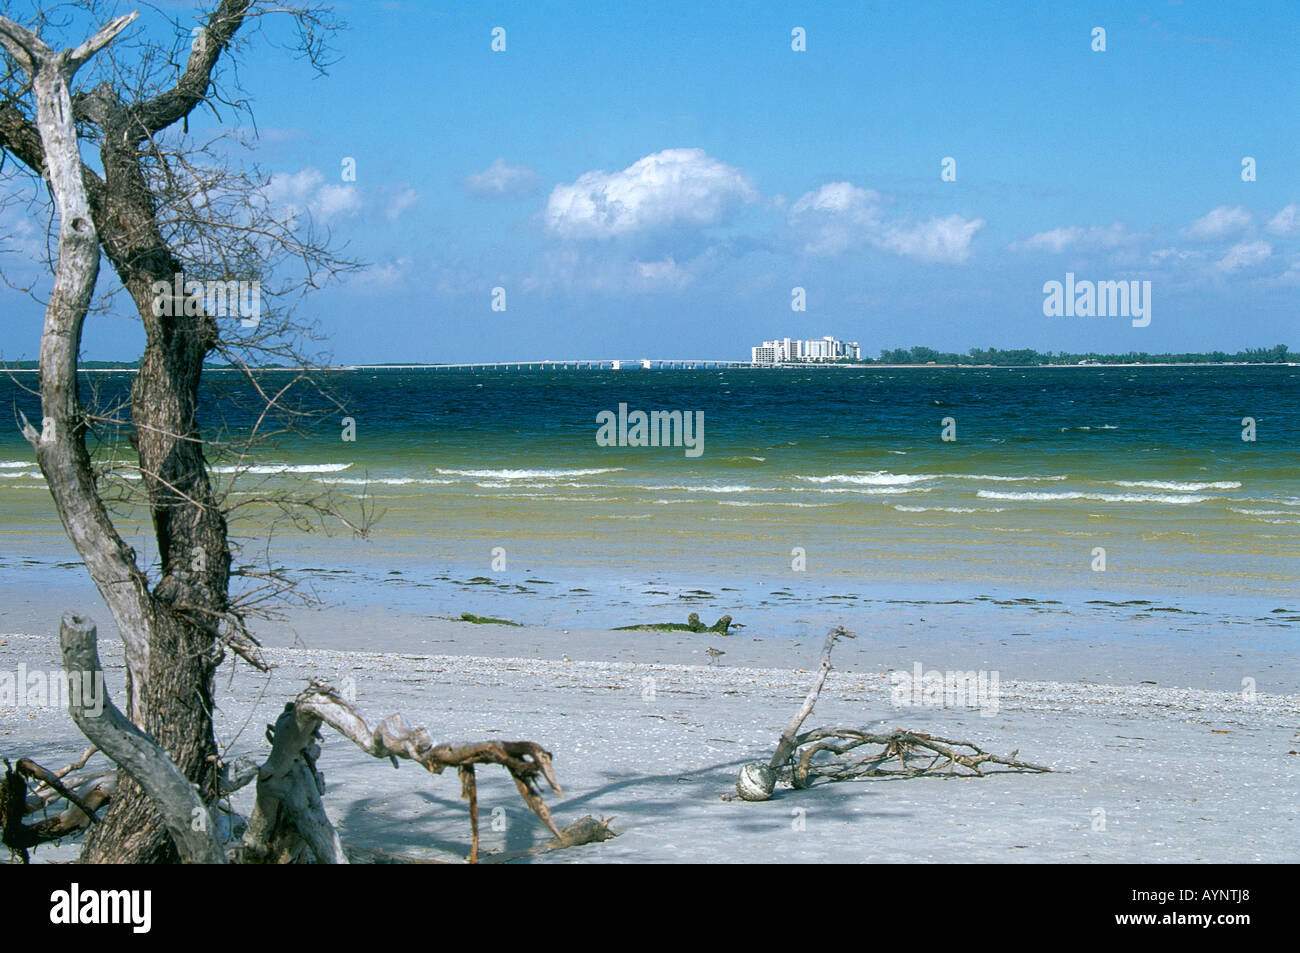 Los amantes de la playa han abandonado la playa para el Driftwood que proyecta sombras sobre la arena de la playa de Bowman en Sanibel Island, ignorado por los rascacielos en el continente al final de la calzada Foto de stock